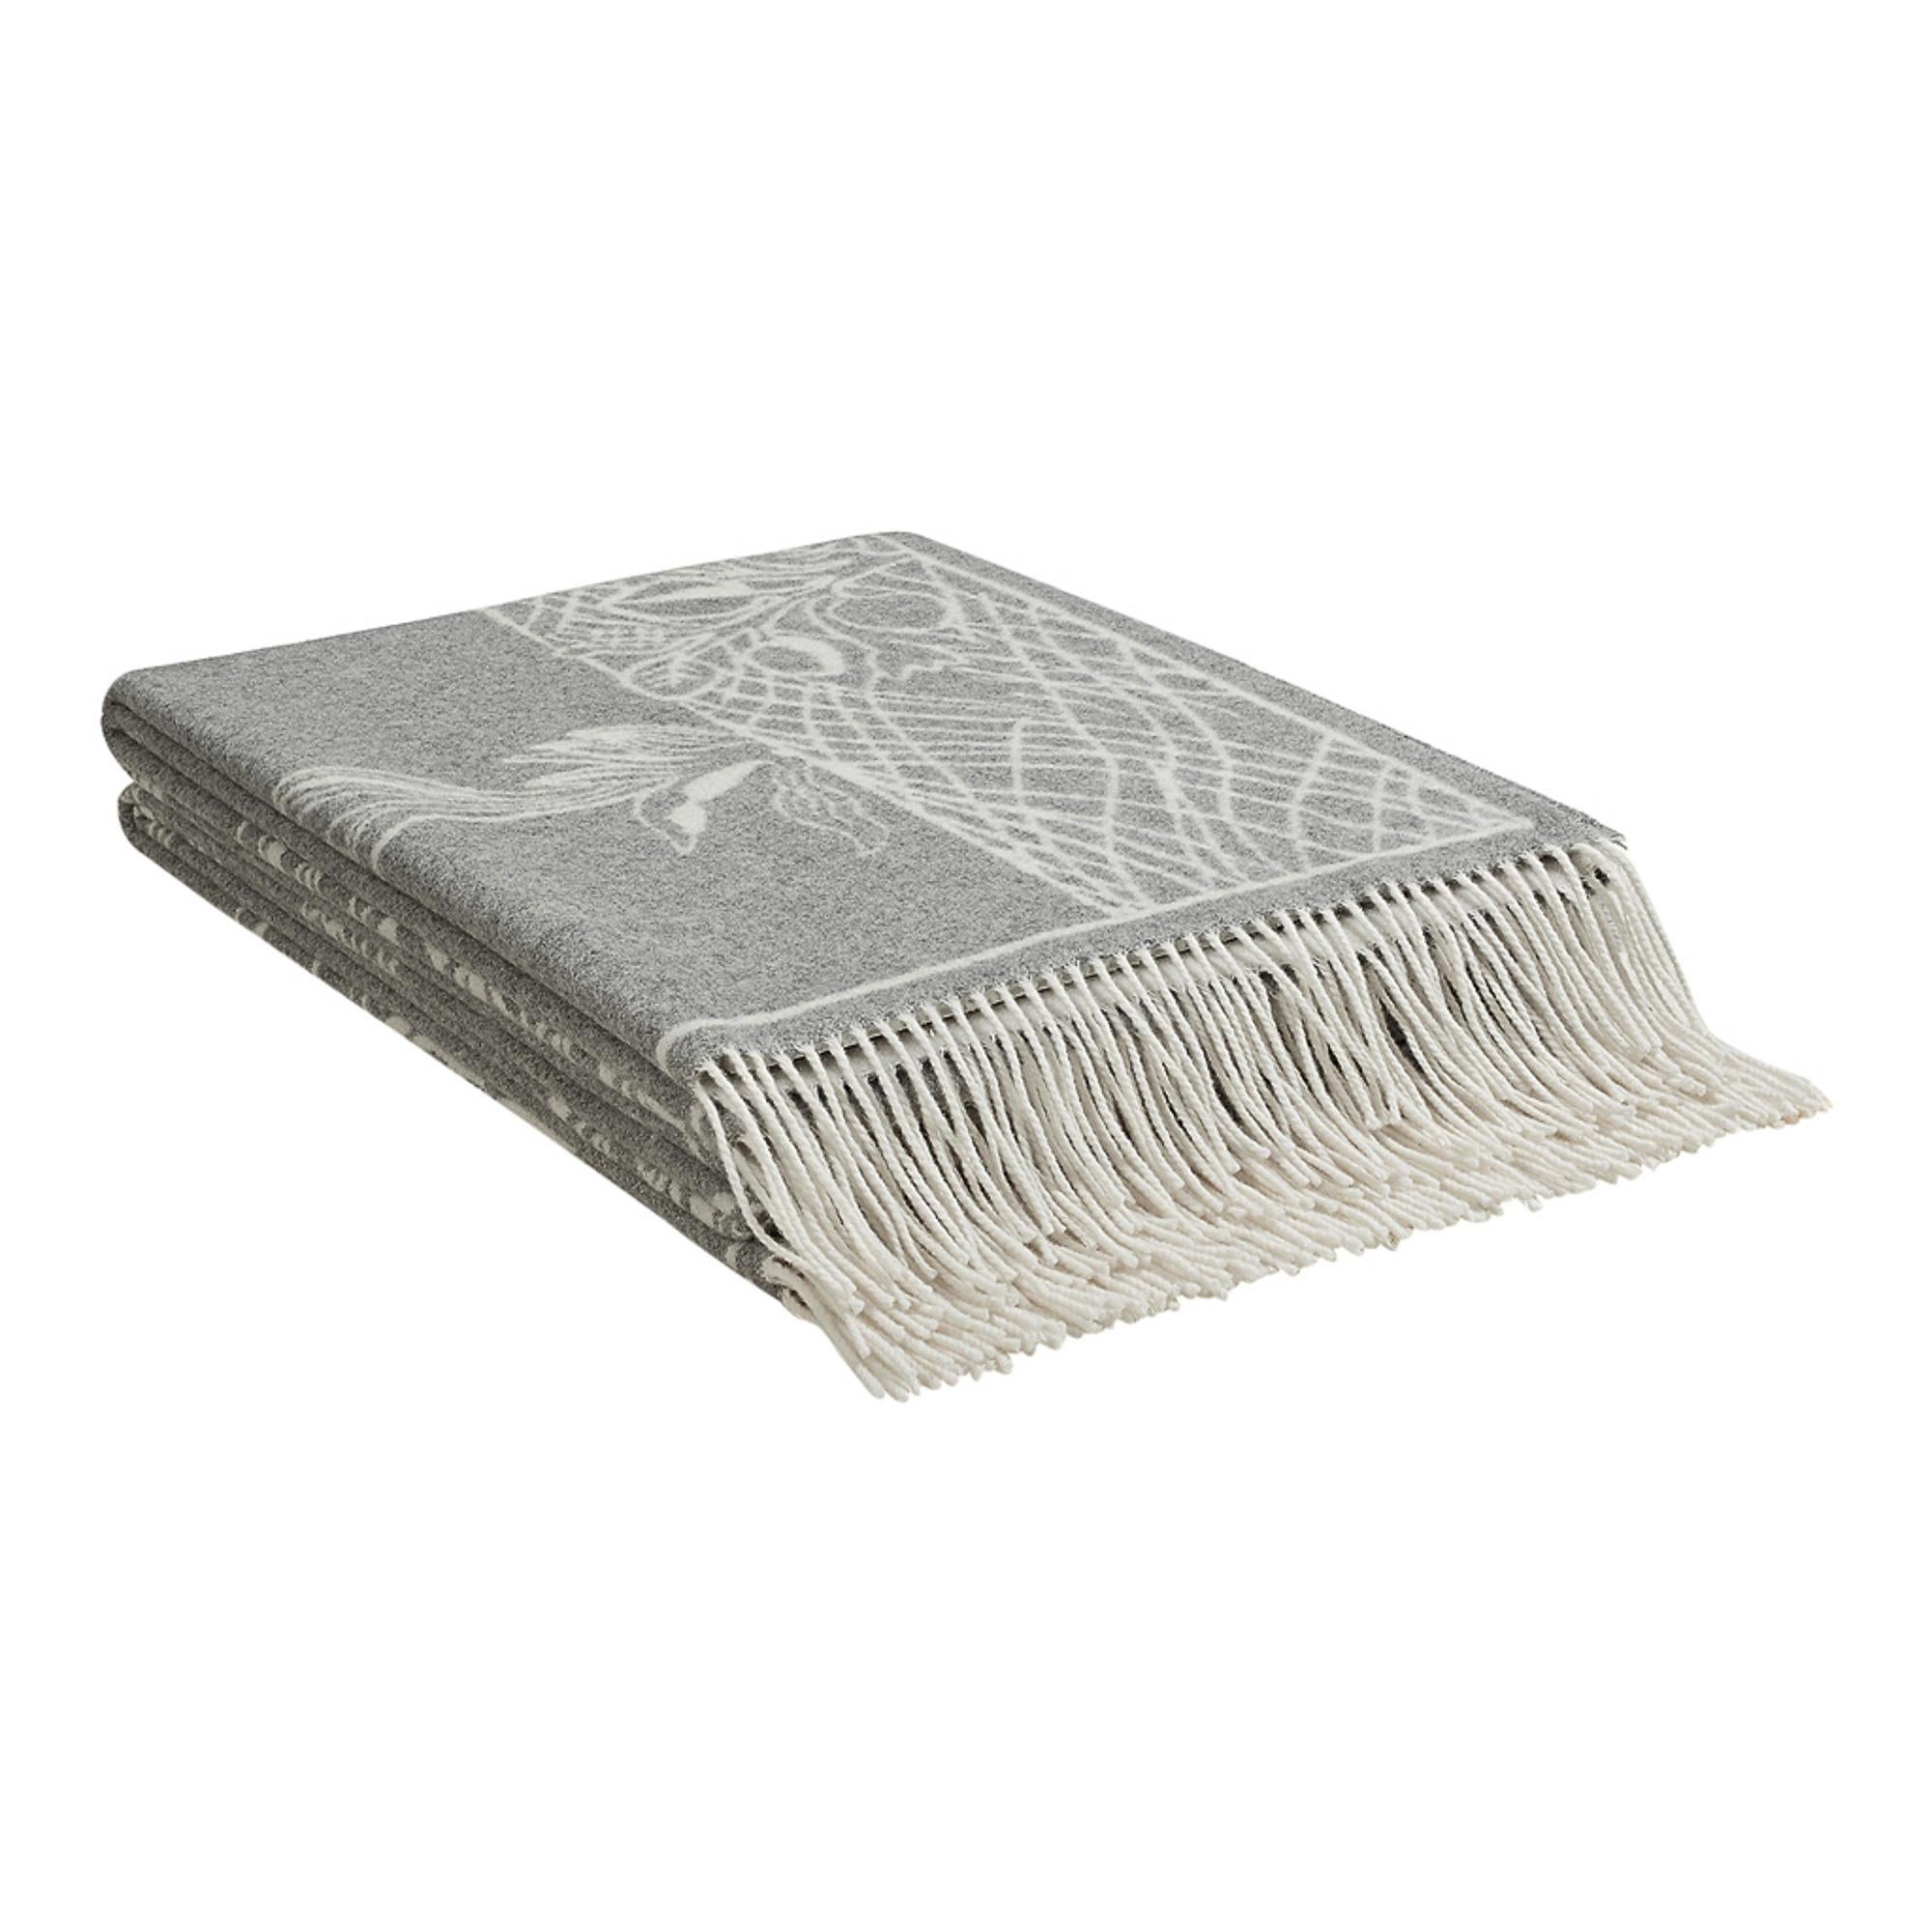 Gray Hermes Della Cavalleria Favolosa Blanket Gris / Ecru New For Sale